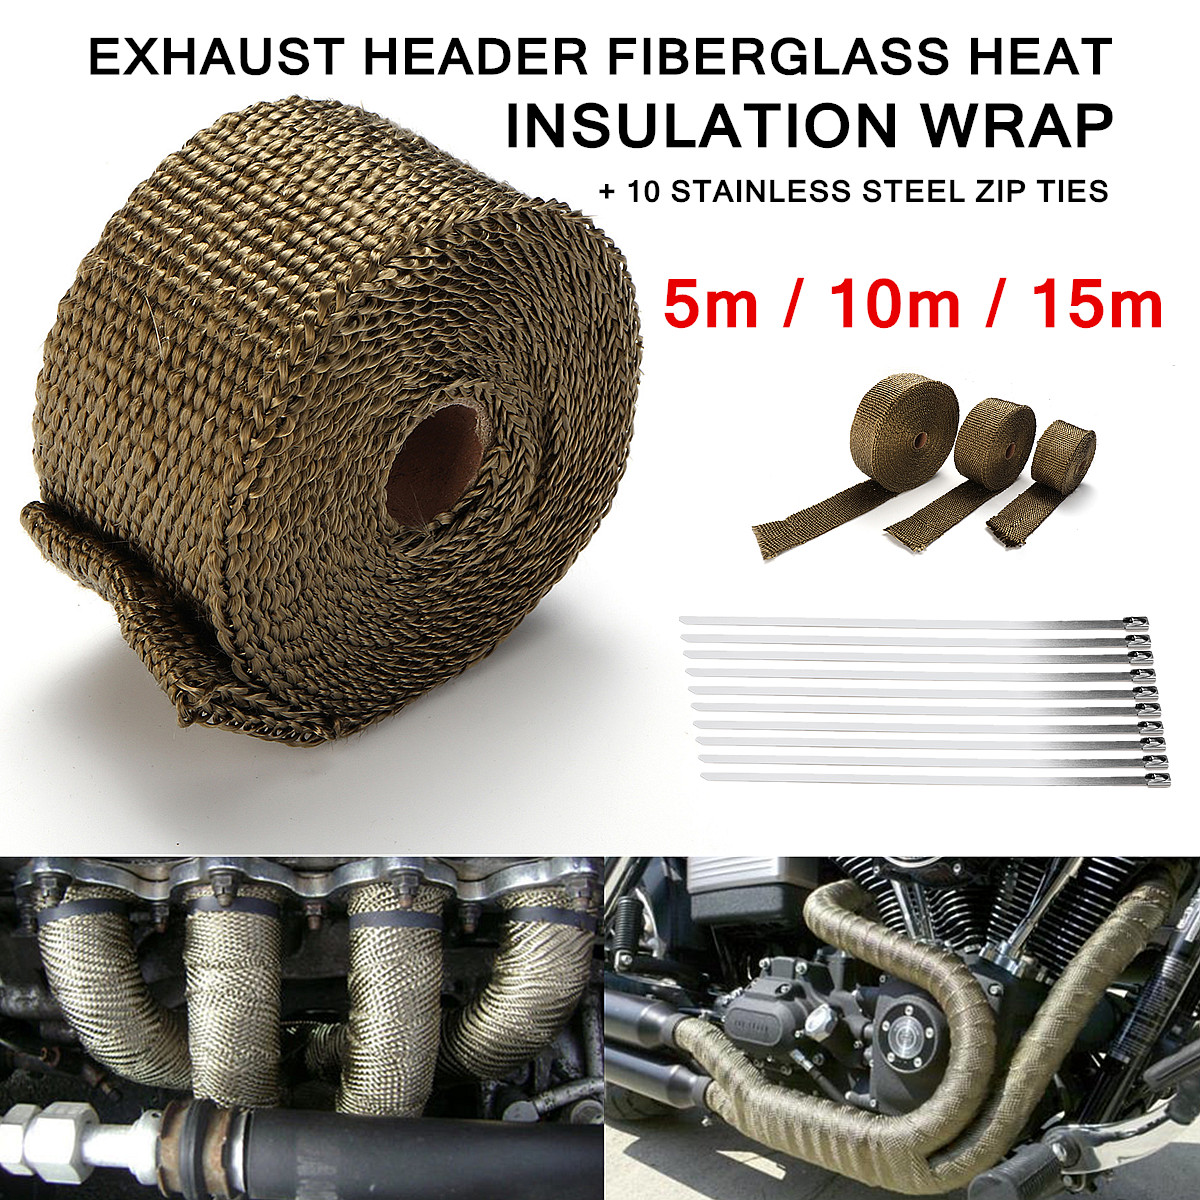 exhaust header fiberglass heat insulation wrap